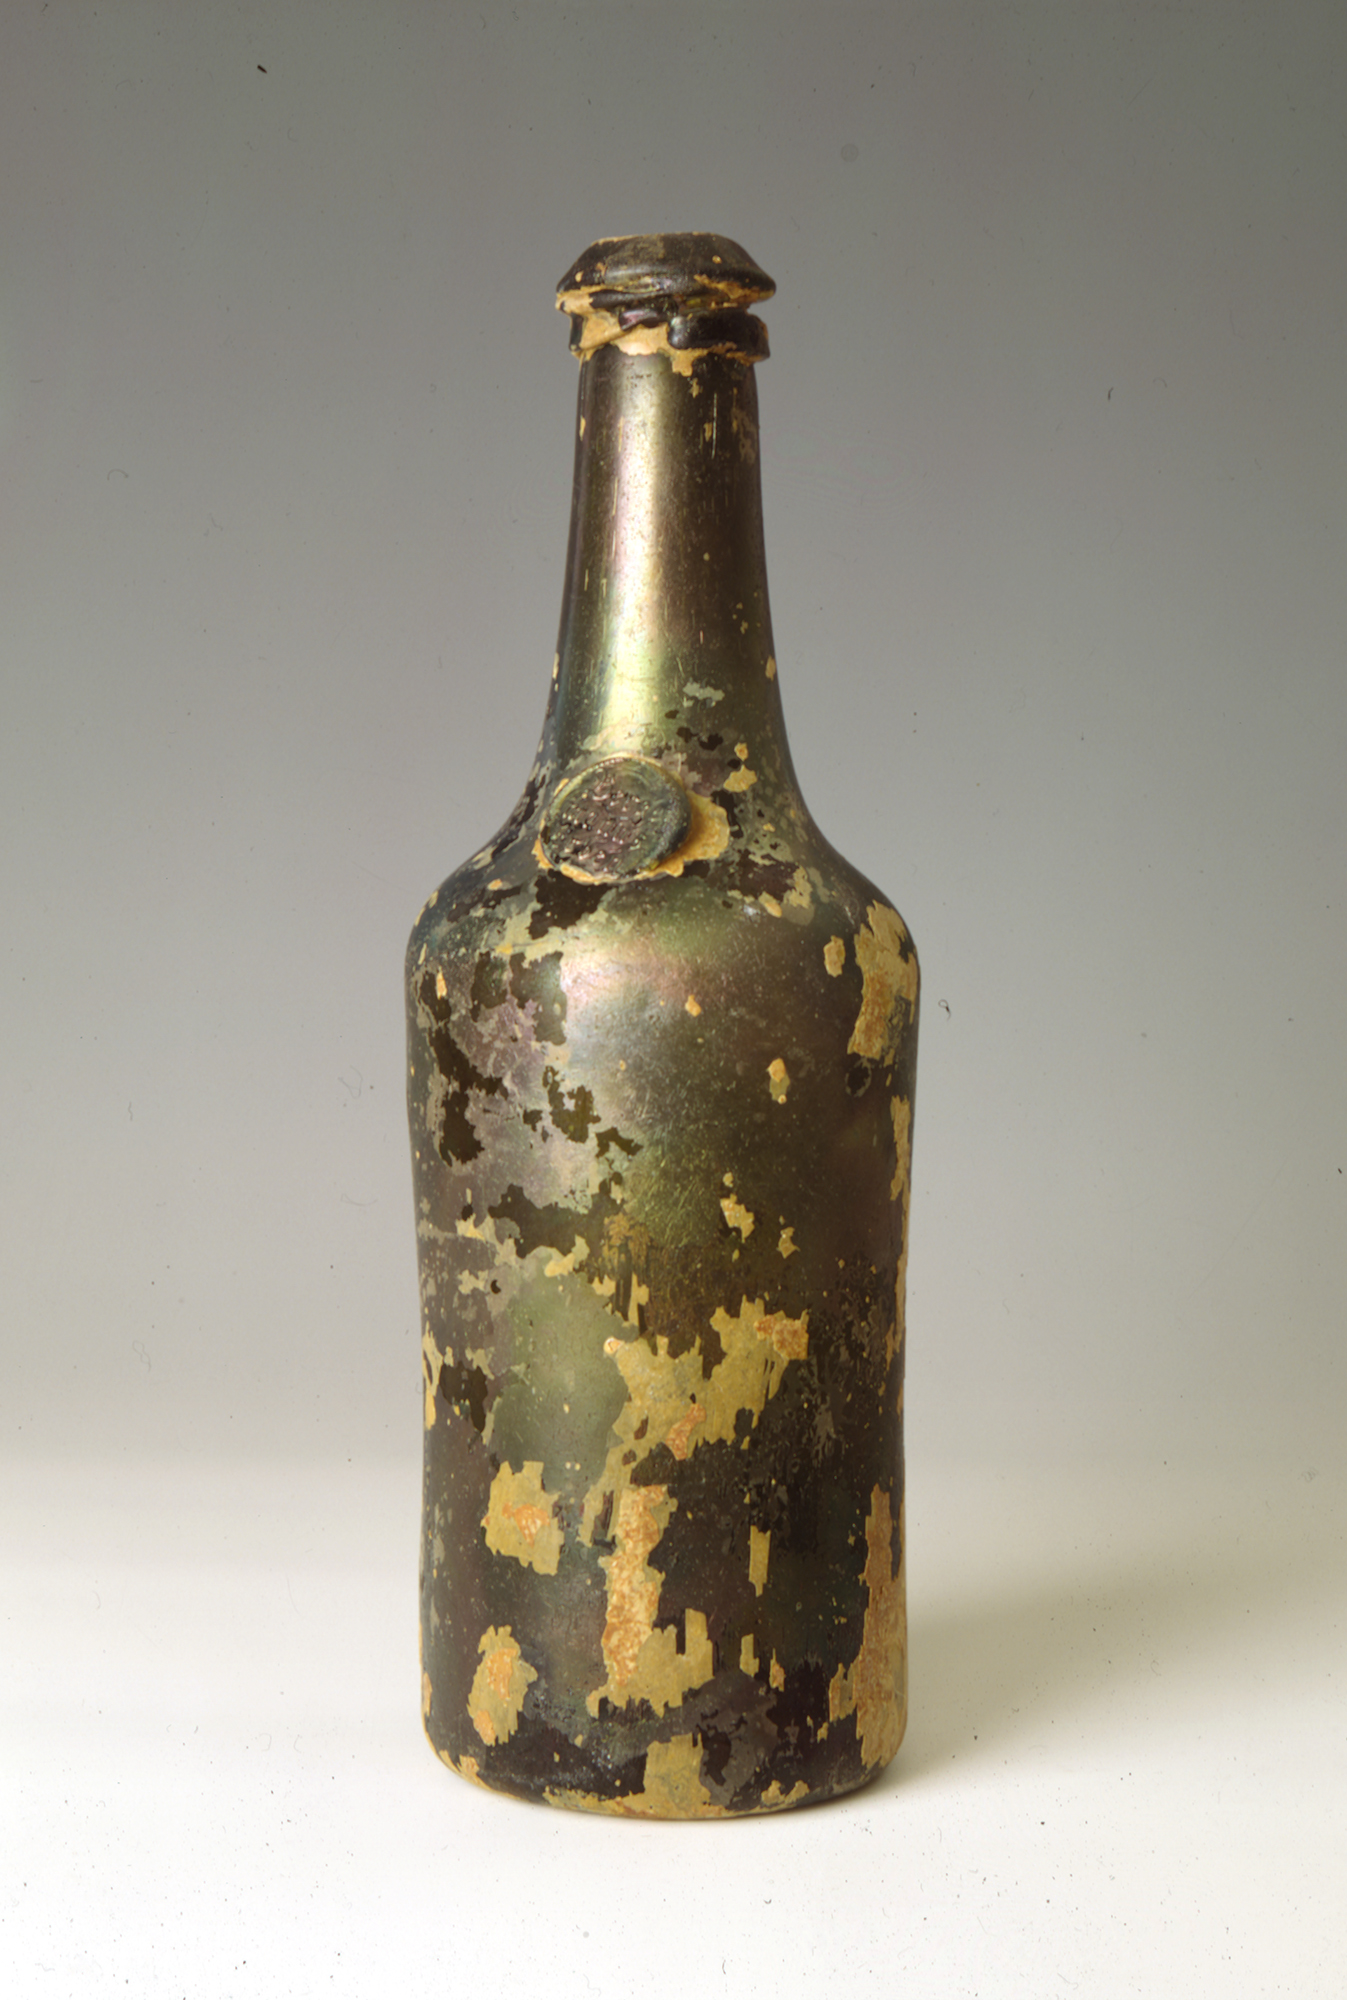 Flasche mit Marke "Bergemann Erben" (Stiftung Stadtmuseum Berlin CC BY-NC-SA)